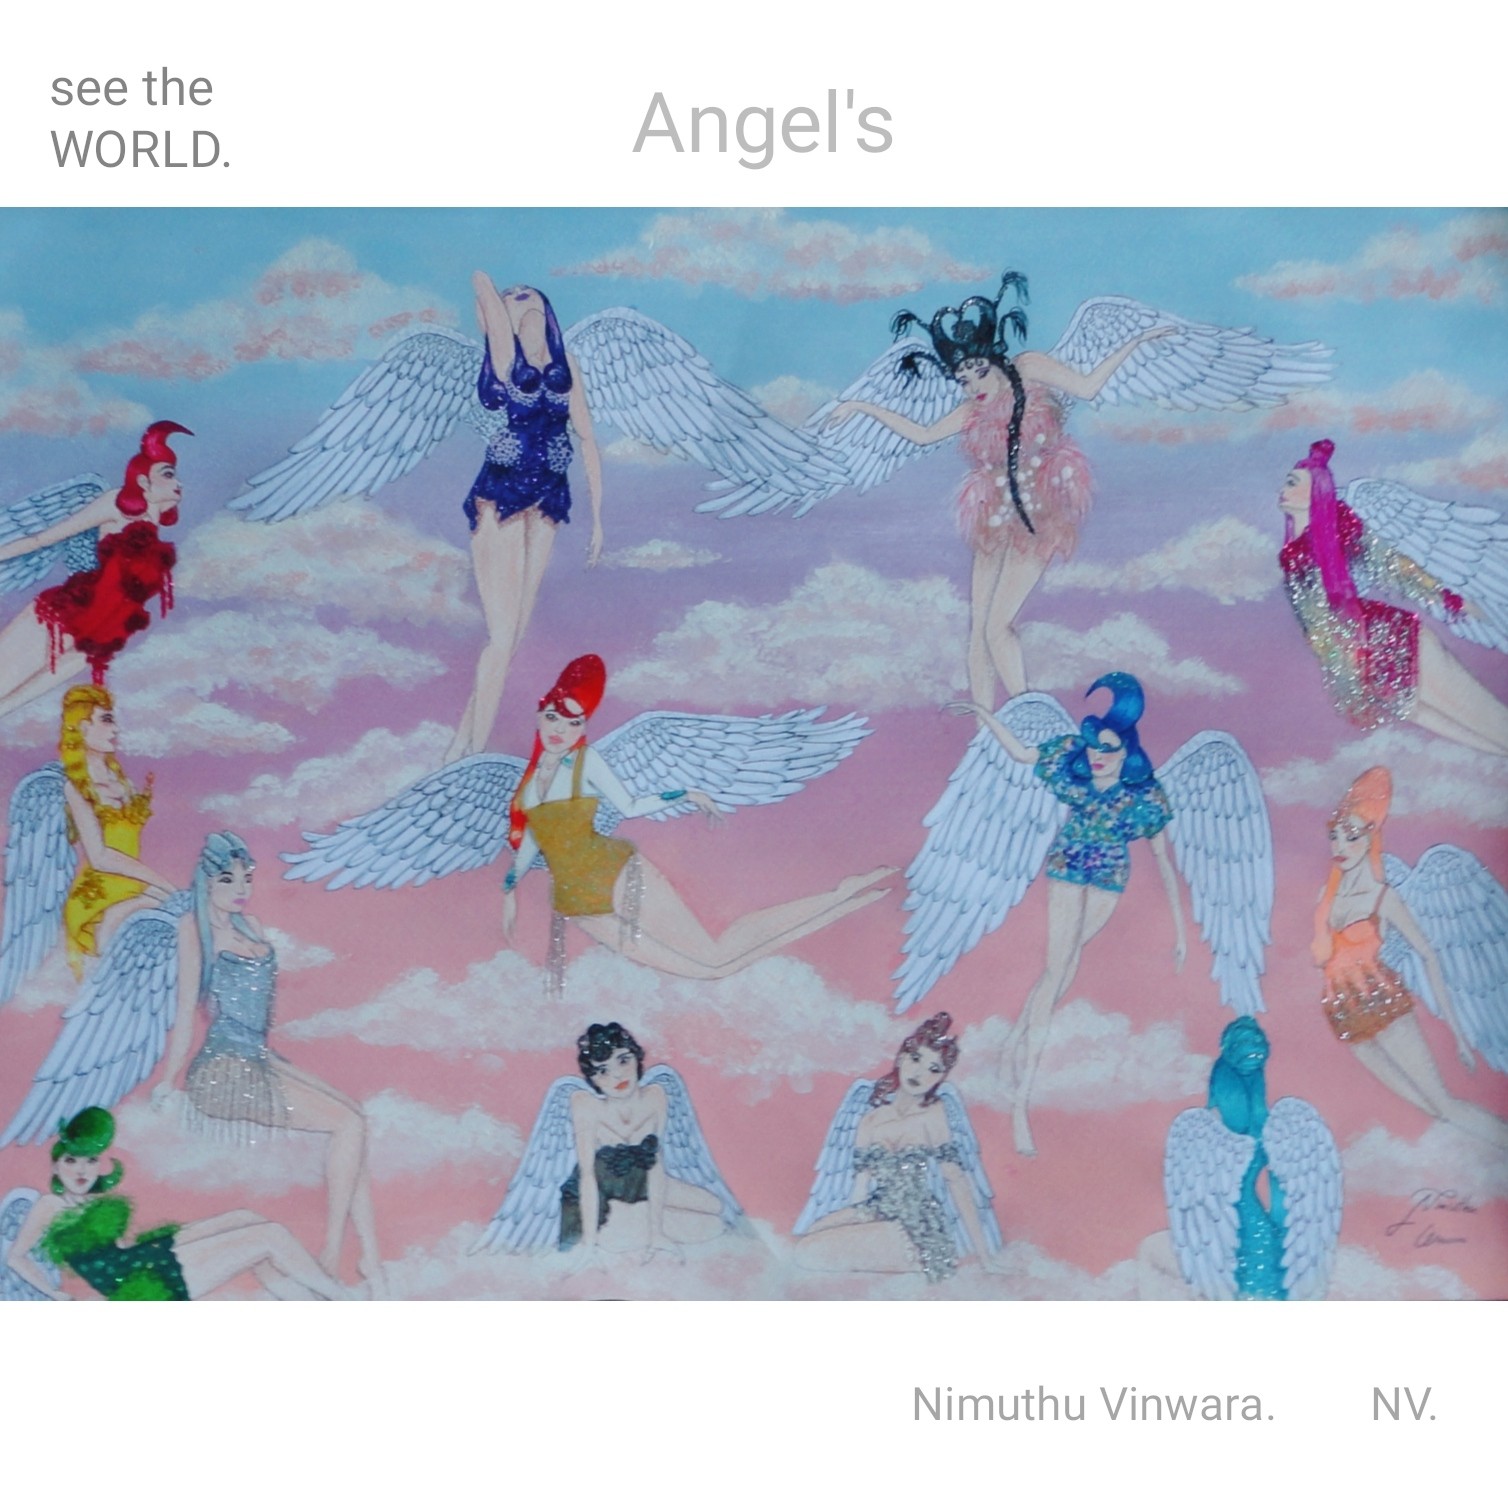 Angel's by Nimuthu Vinwara